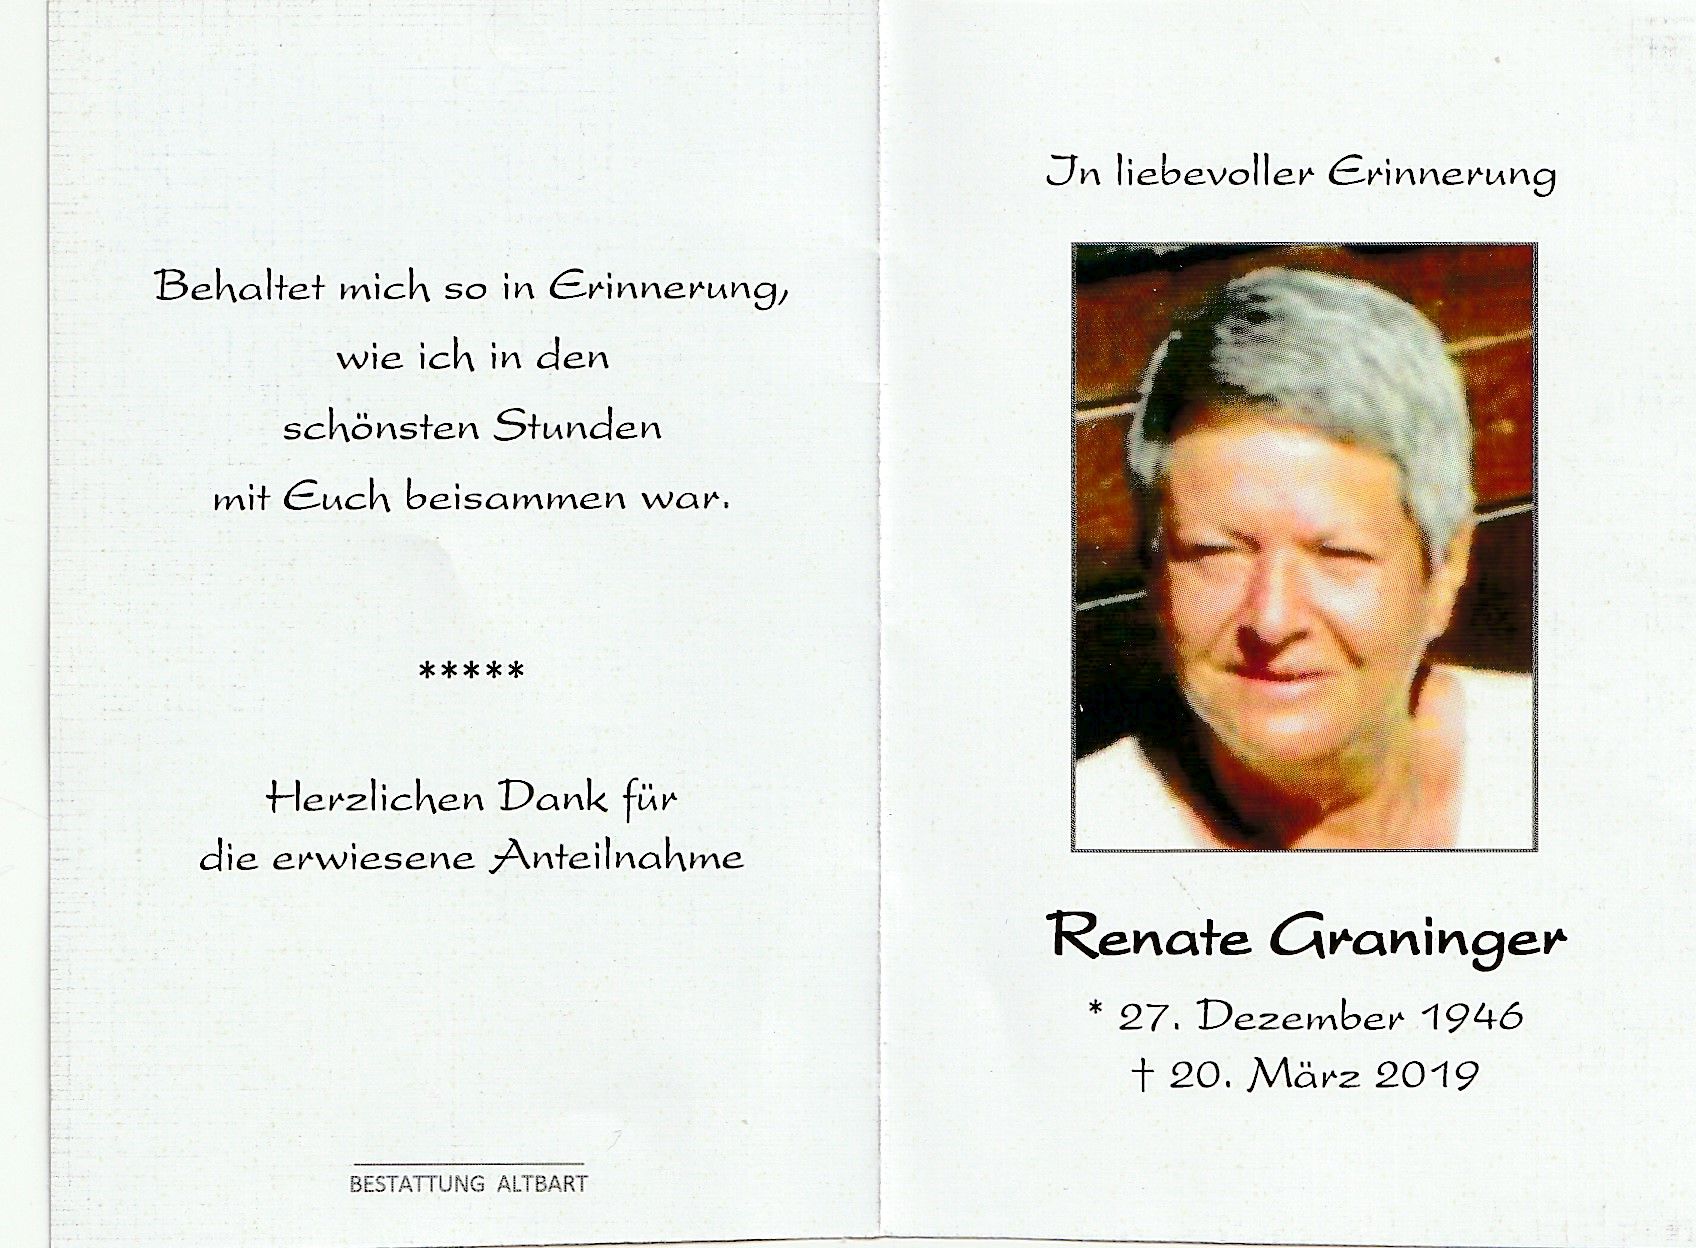 Renate Graninger